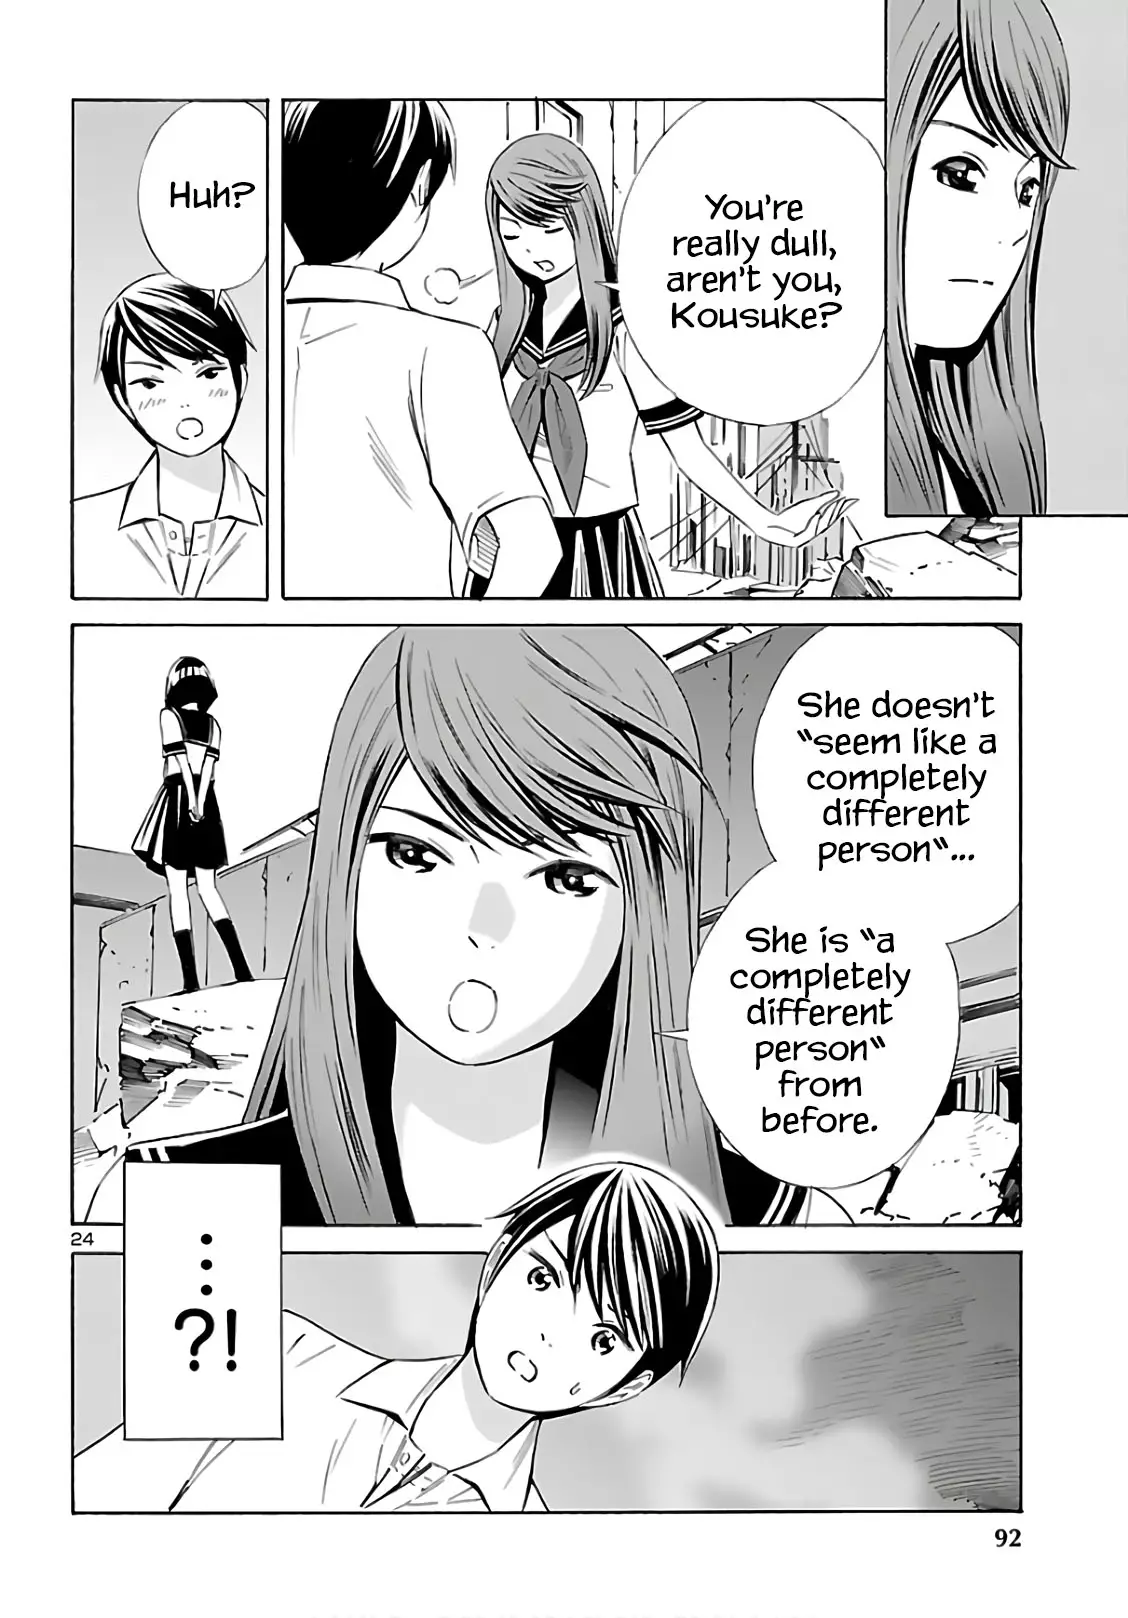 24-Ku No Hanako-San - 9 page 24